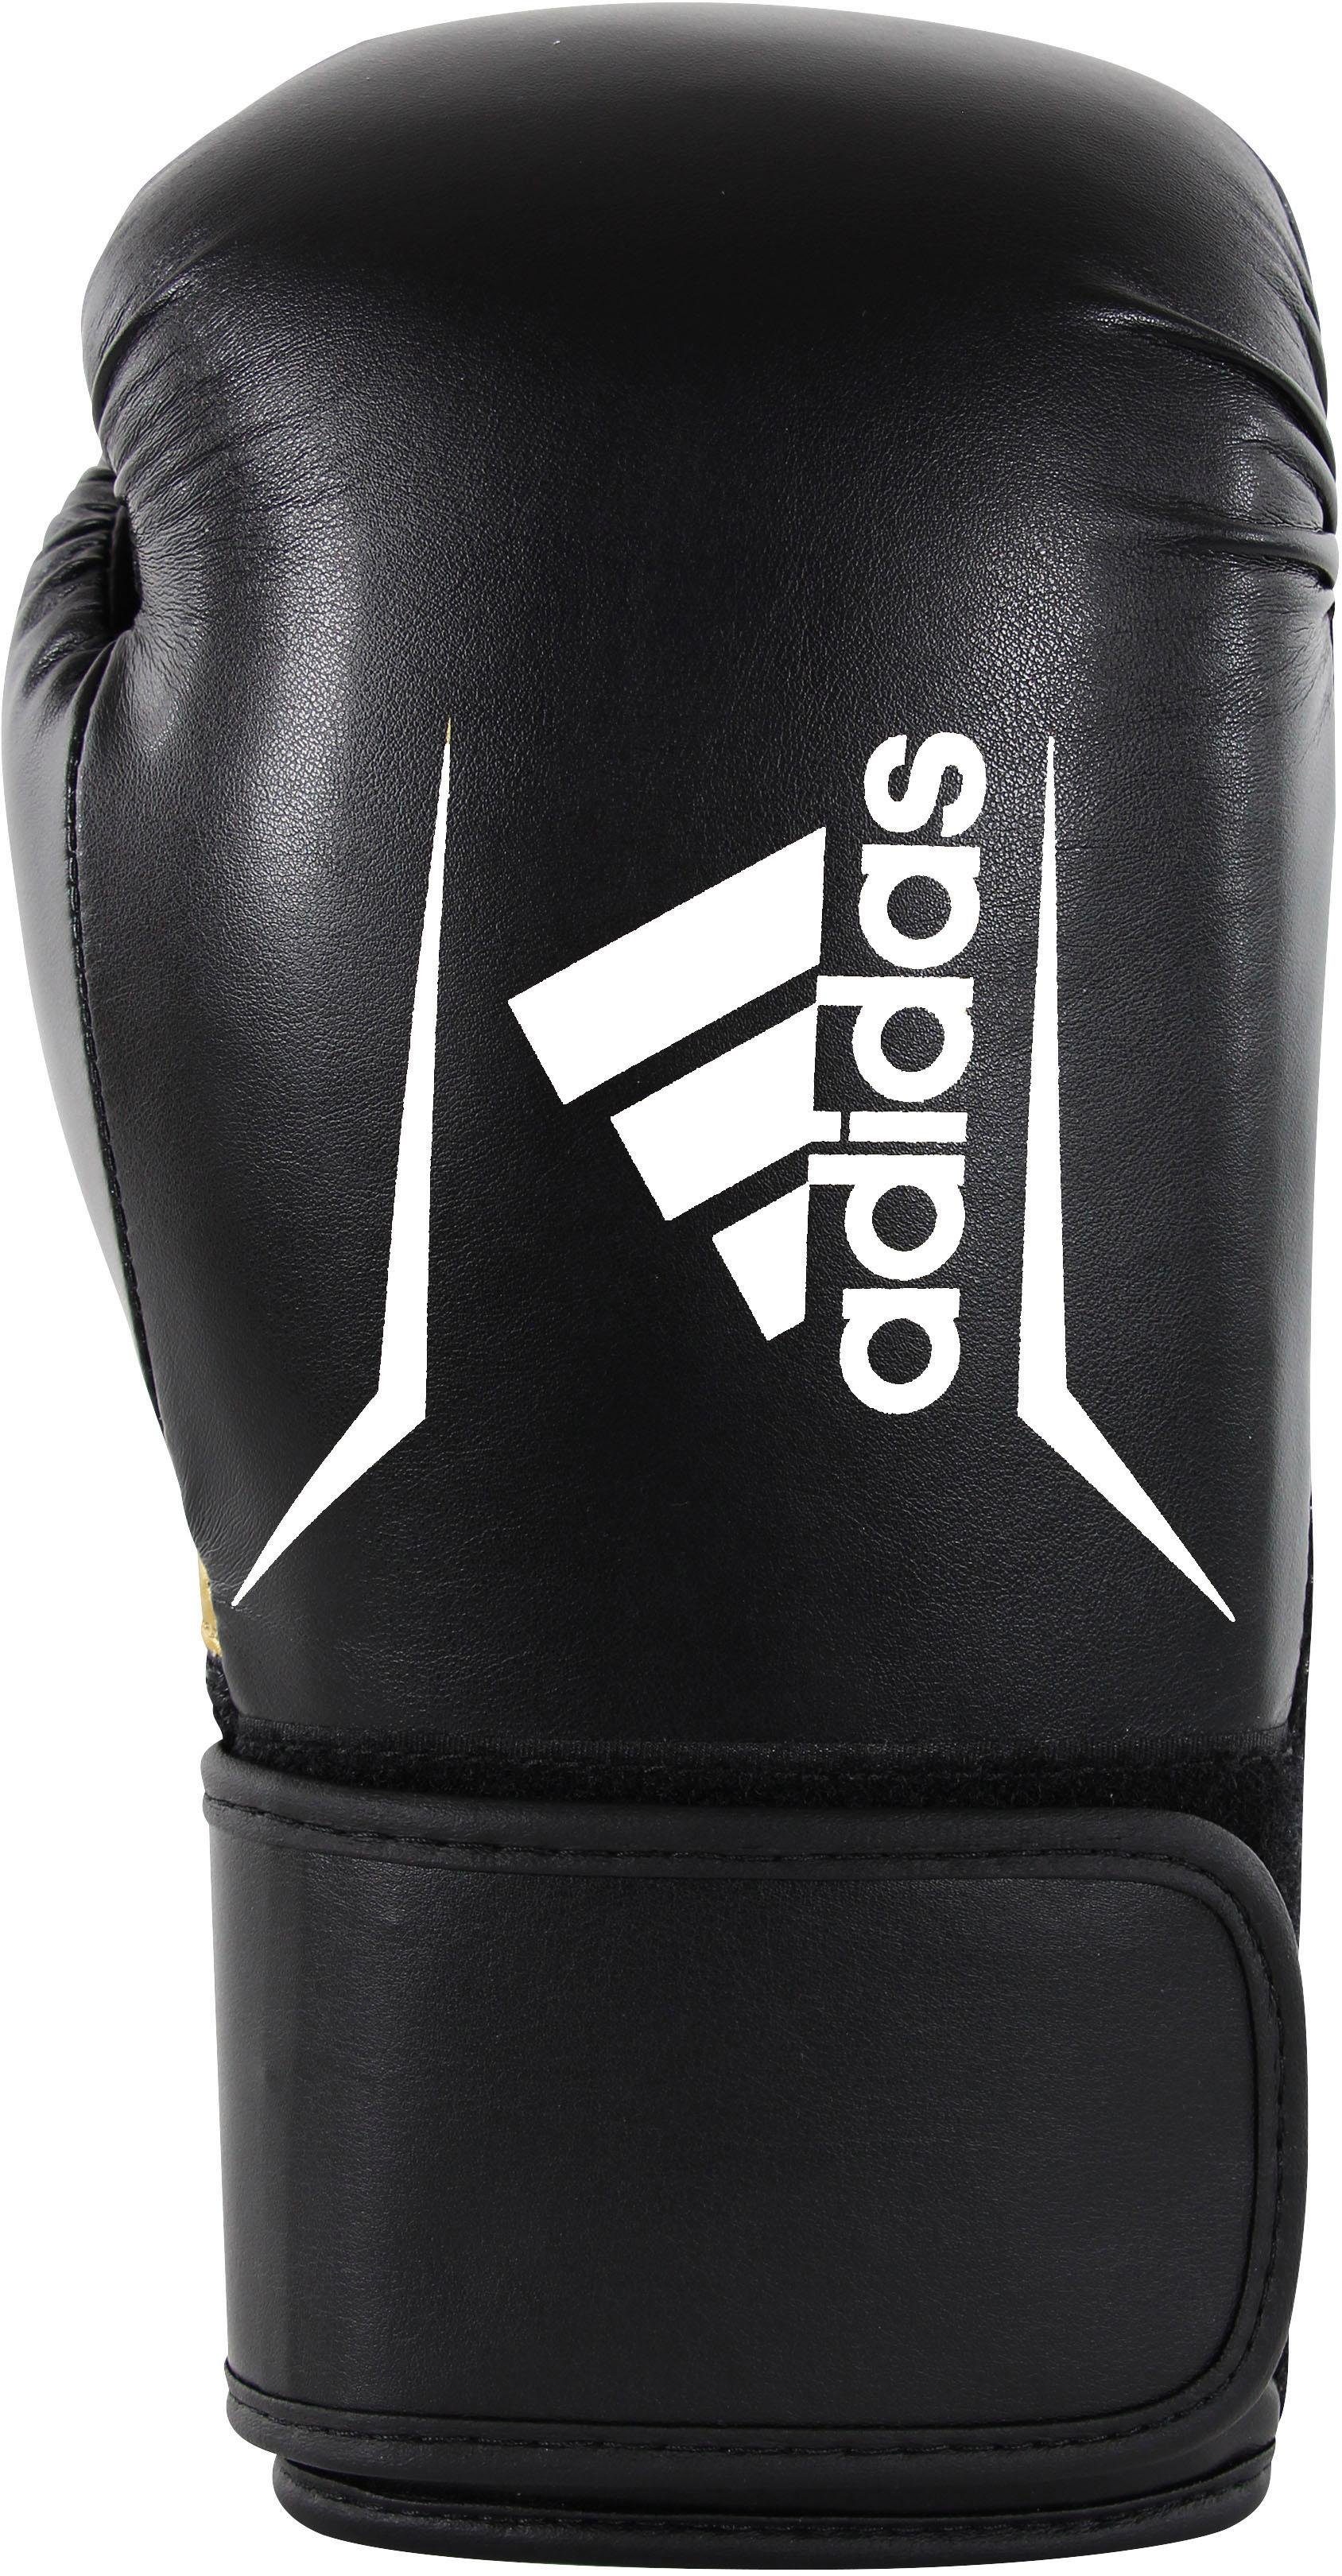 100 adidas Performance schwarz/weiß Speed Boxhandschuhe